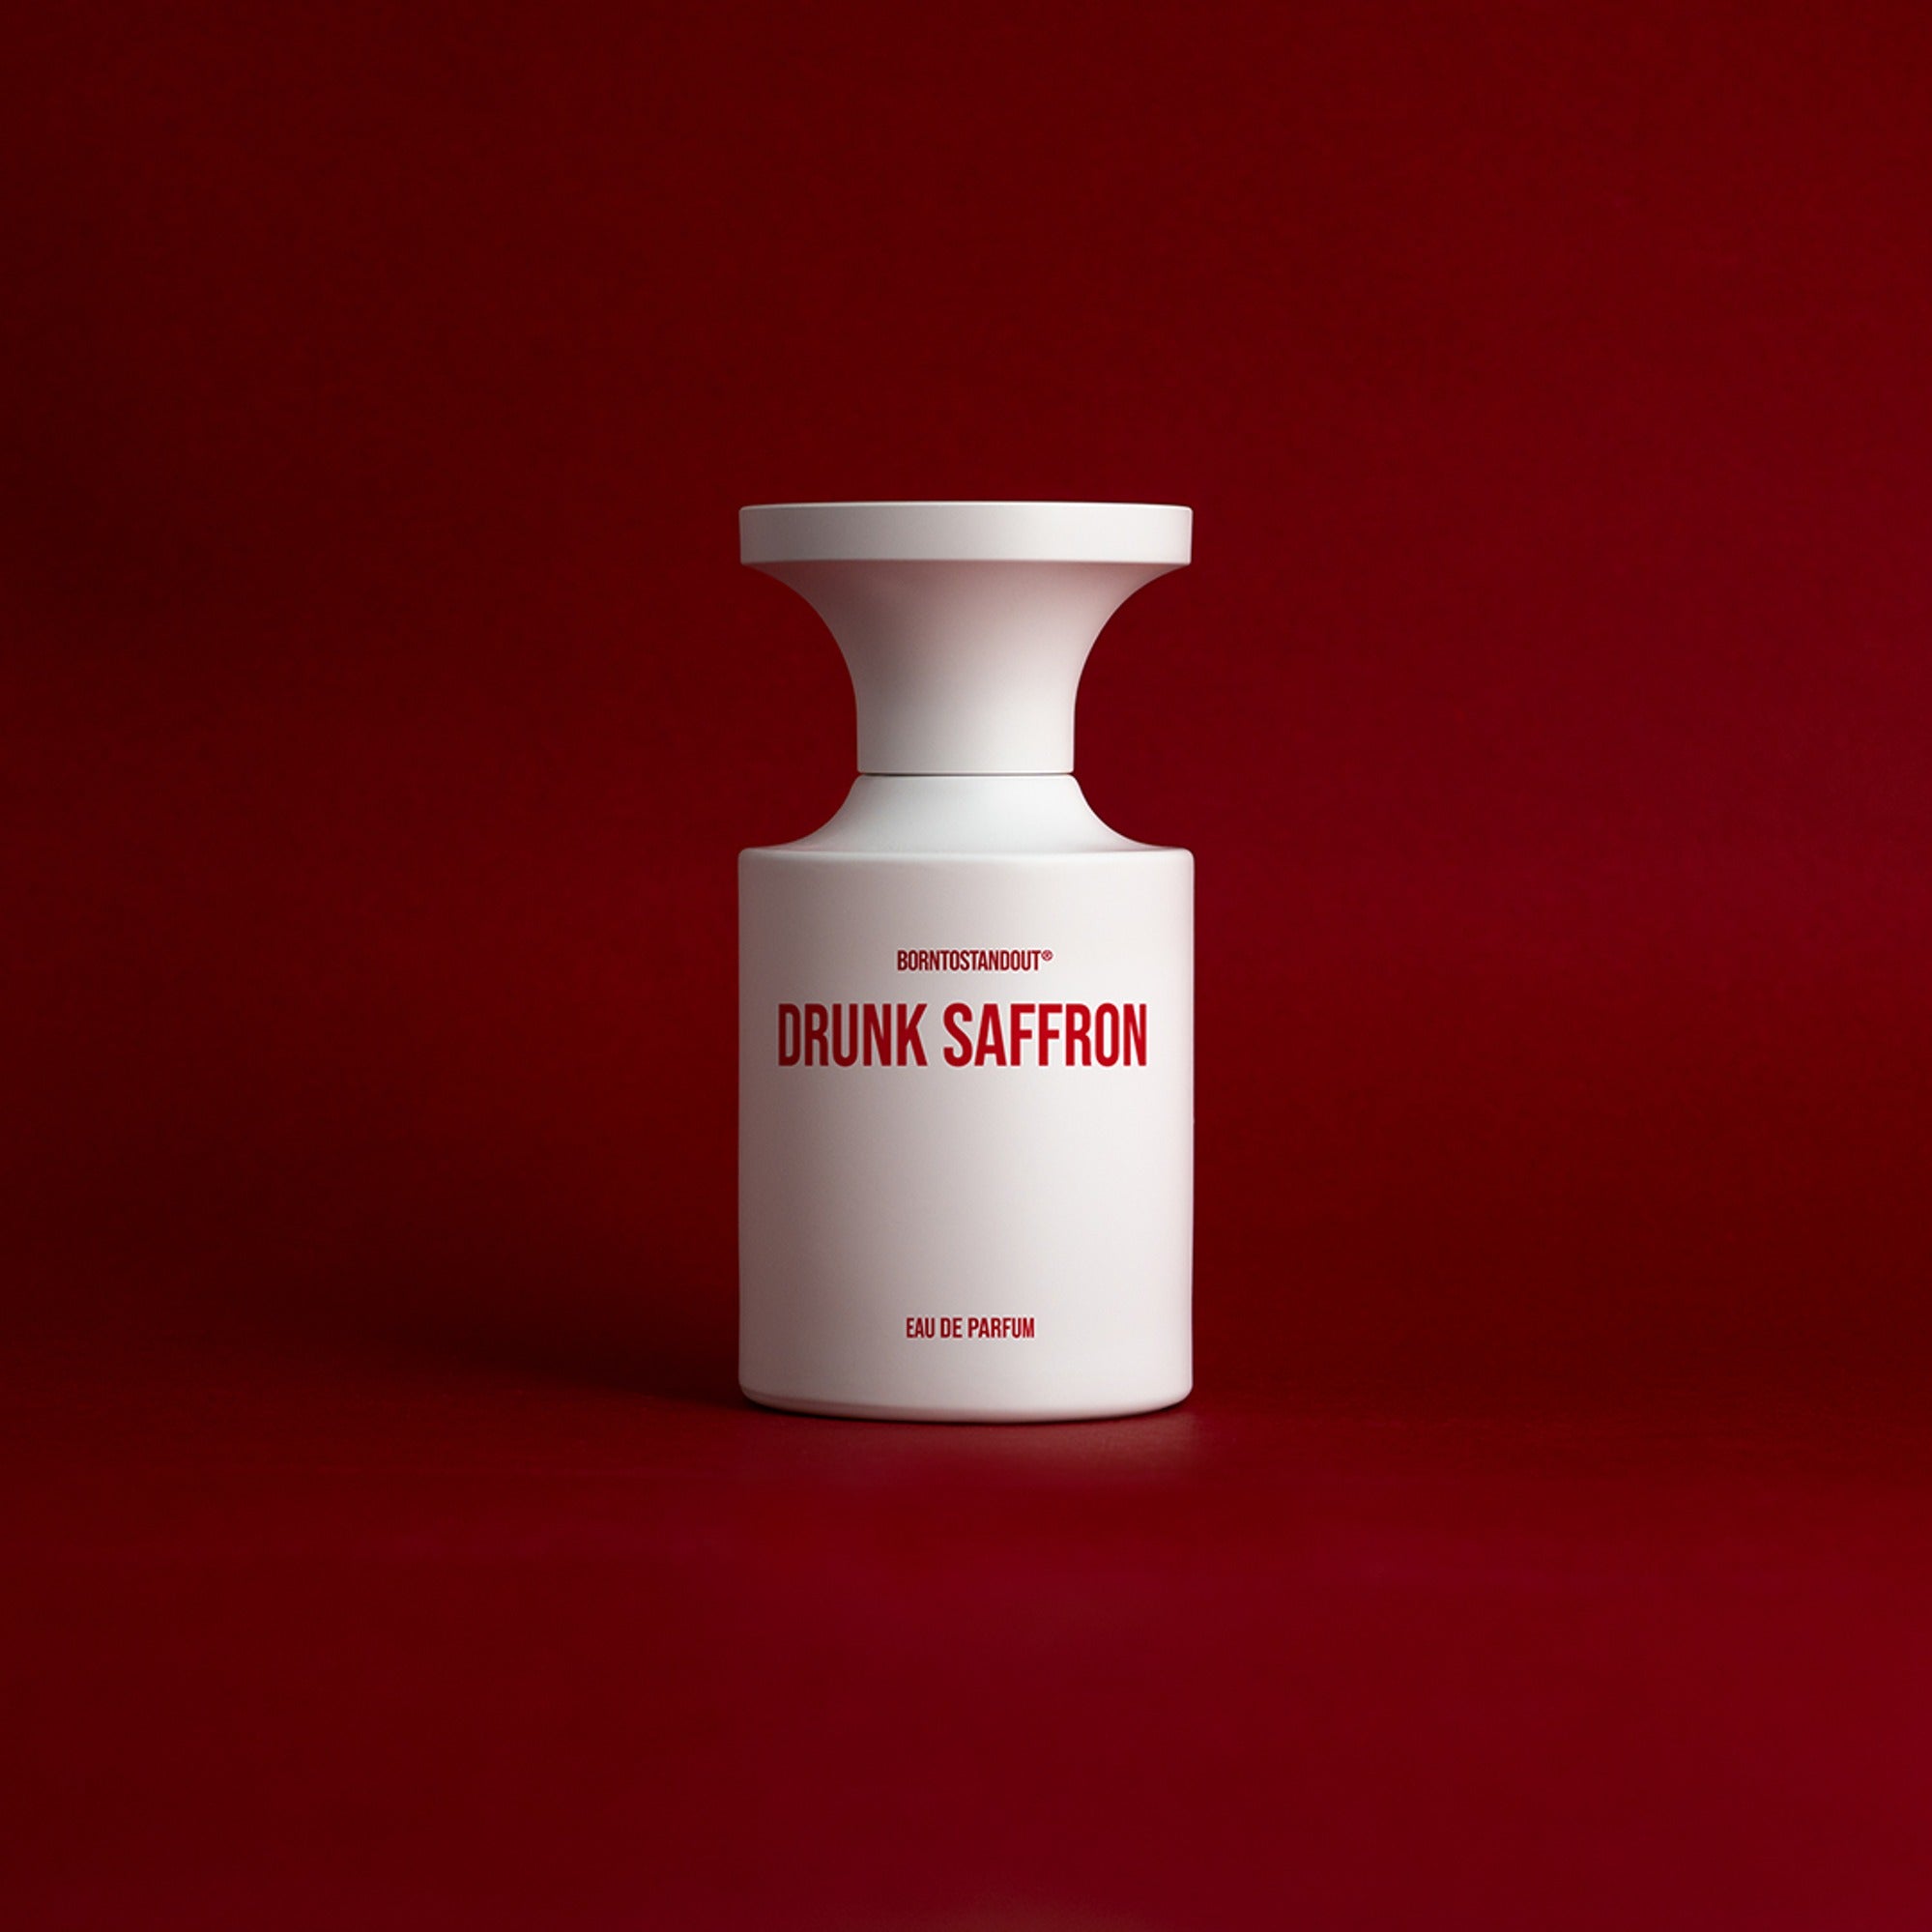 (Matt) BORNTOSTANDOUT Eau de Parfum 50ml #Drunk Saffron - DODOSKIN